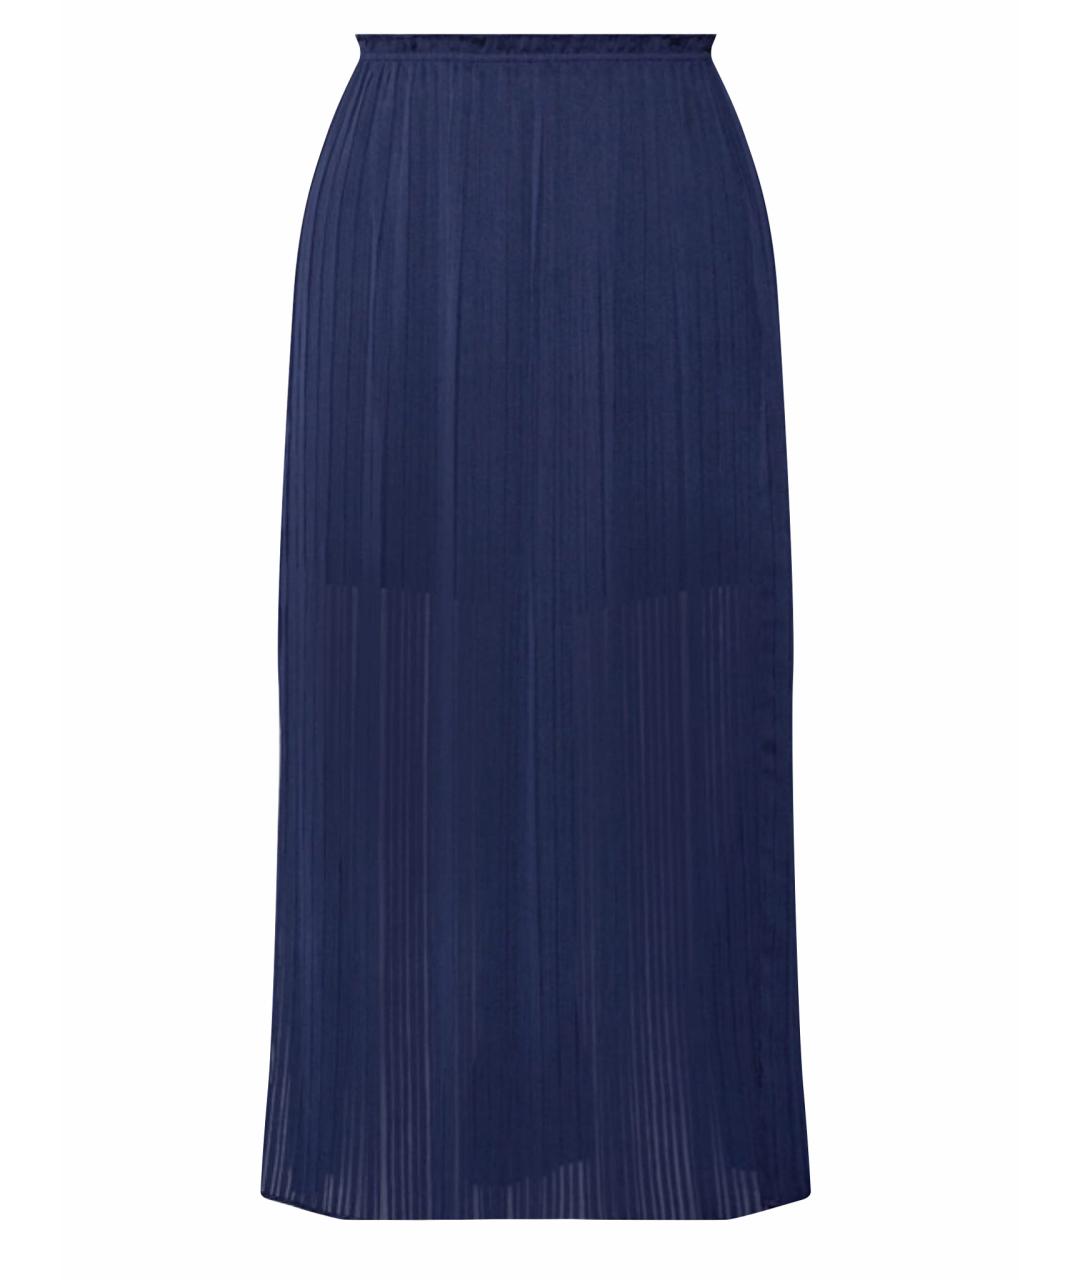 REBECCA MINKOFF Темно-синяя полиэстеровая юбка миди, фото 1